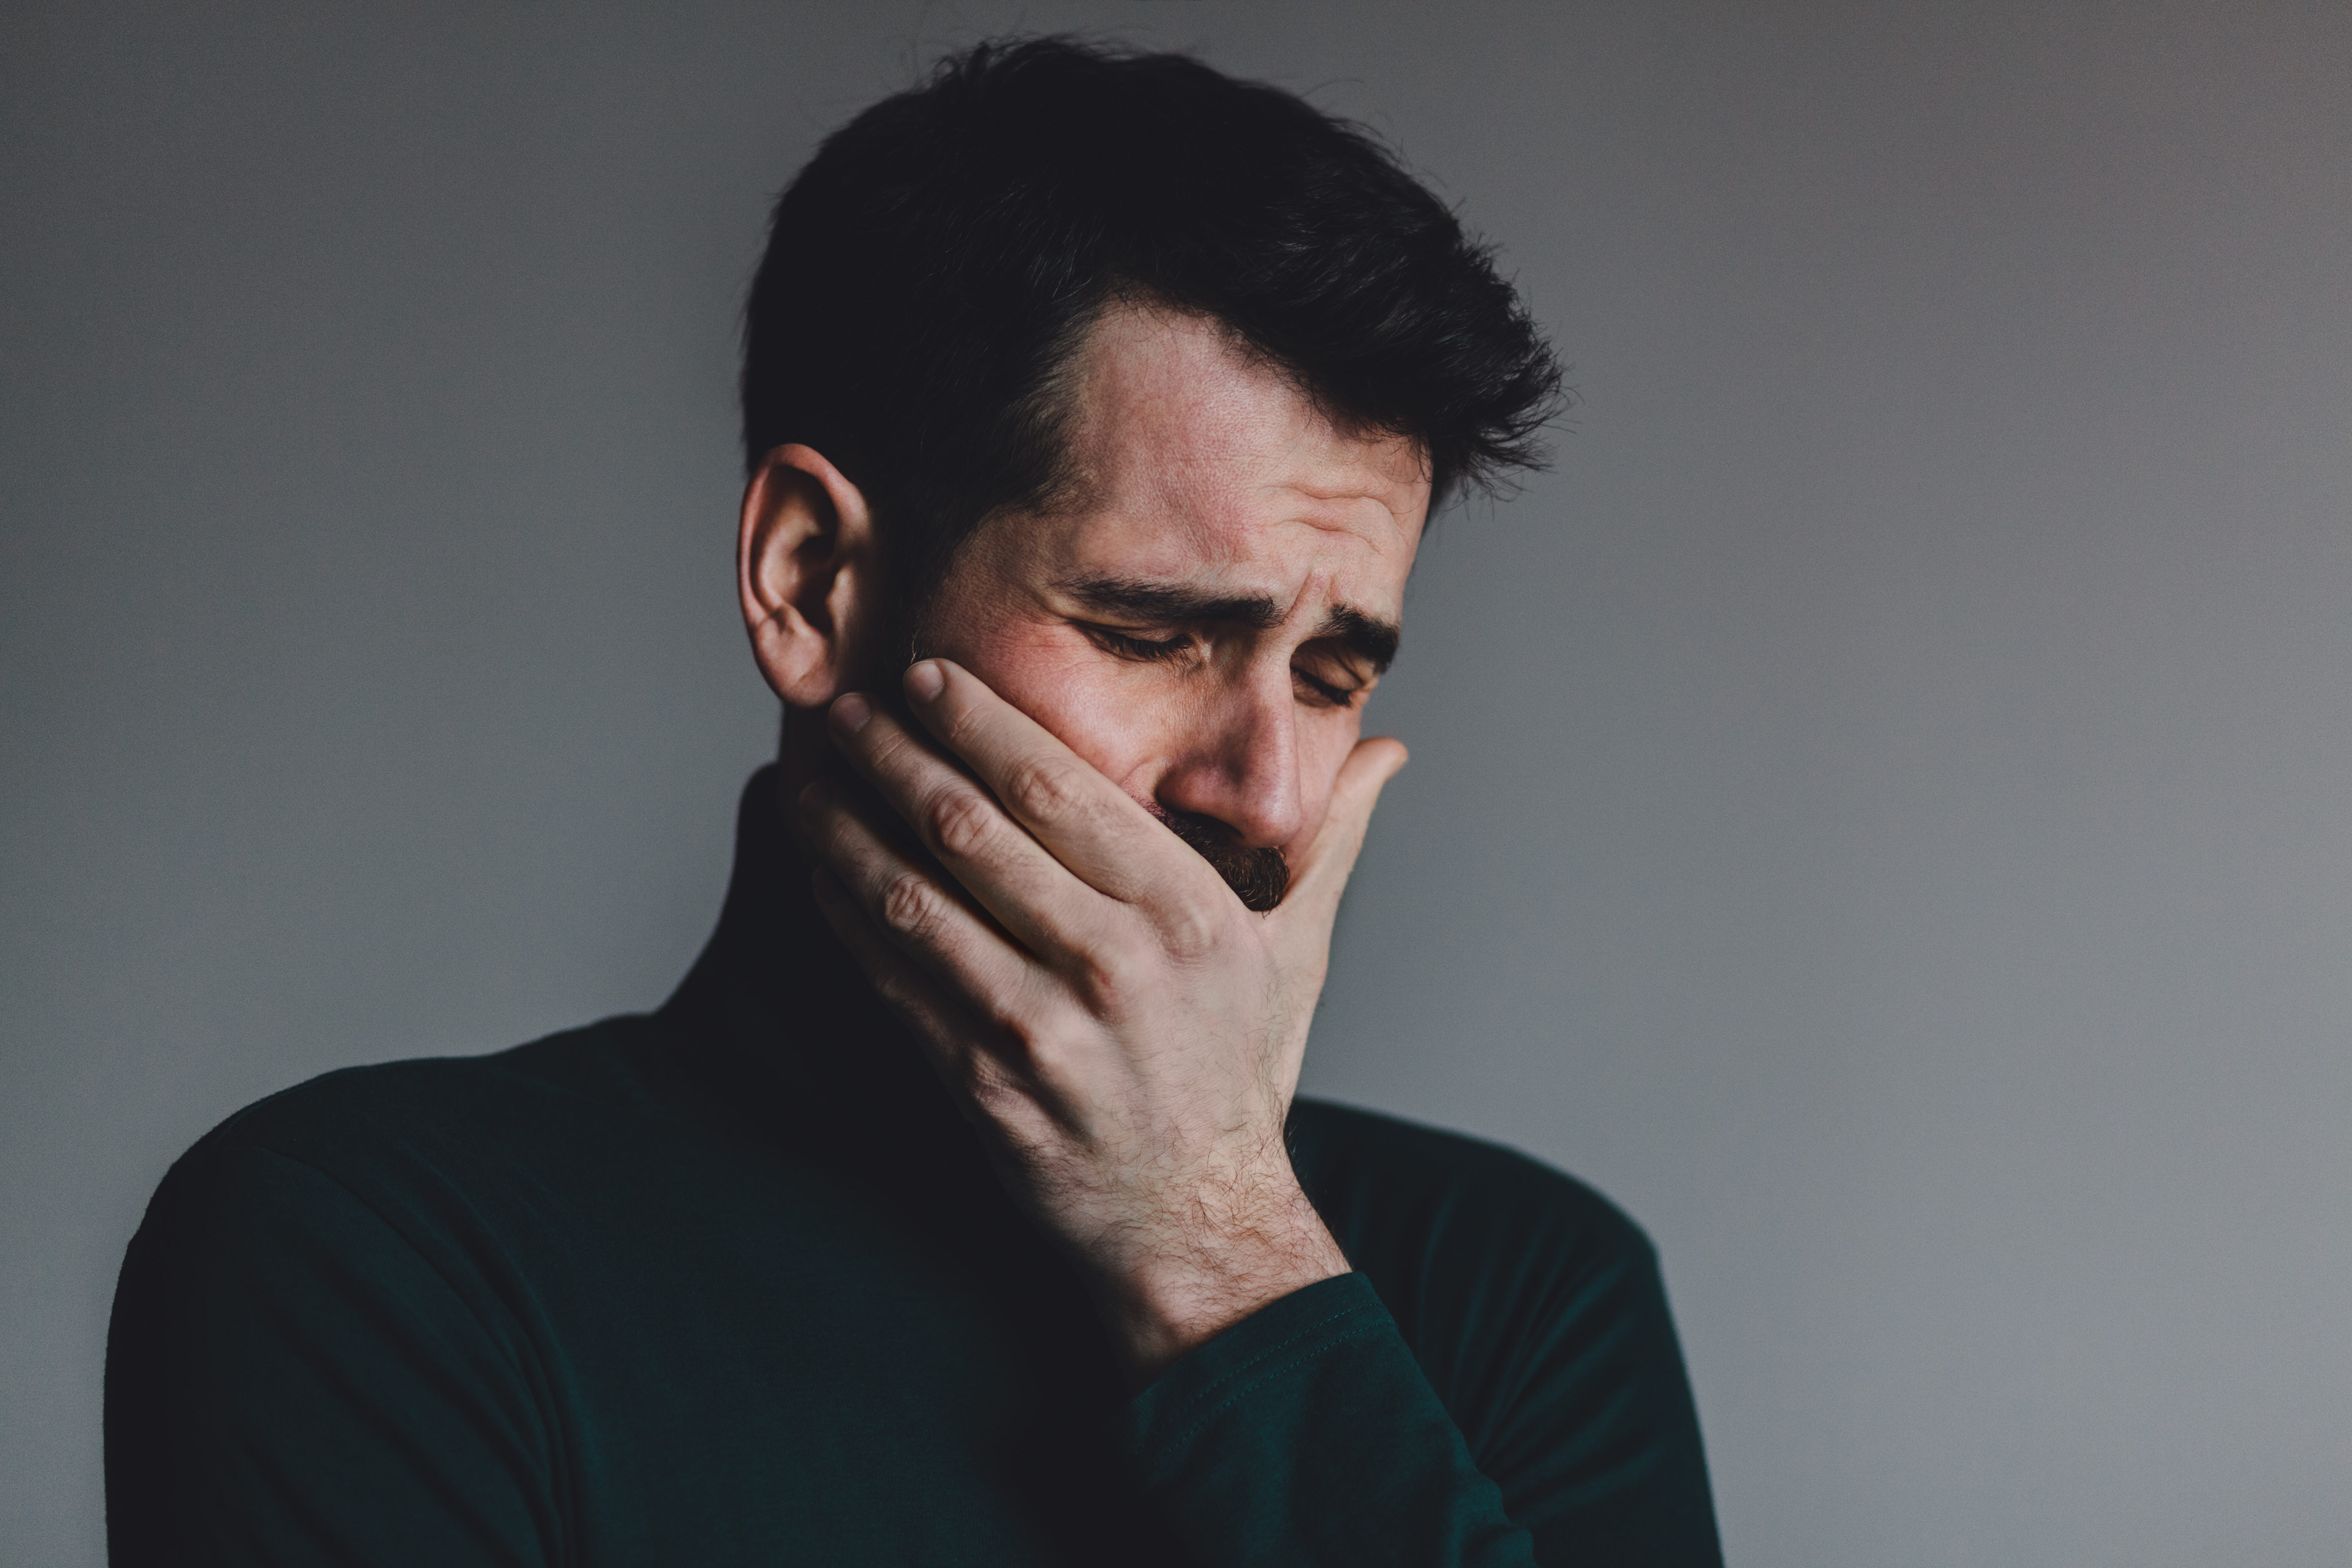 Un homme se tenant la bouche alors qu'il pleure | Source : Shutterstock